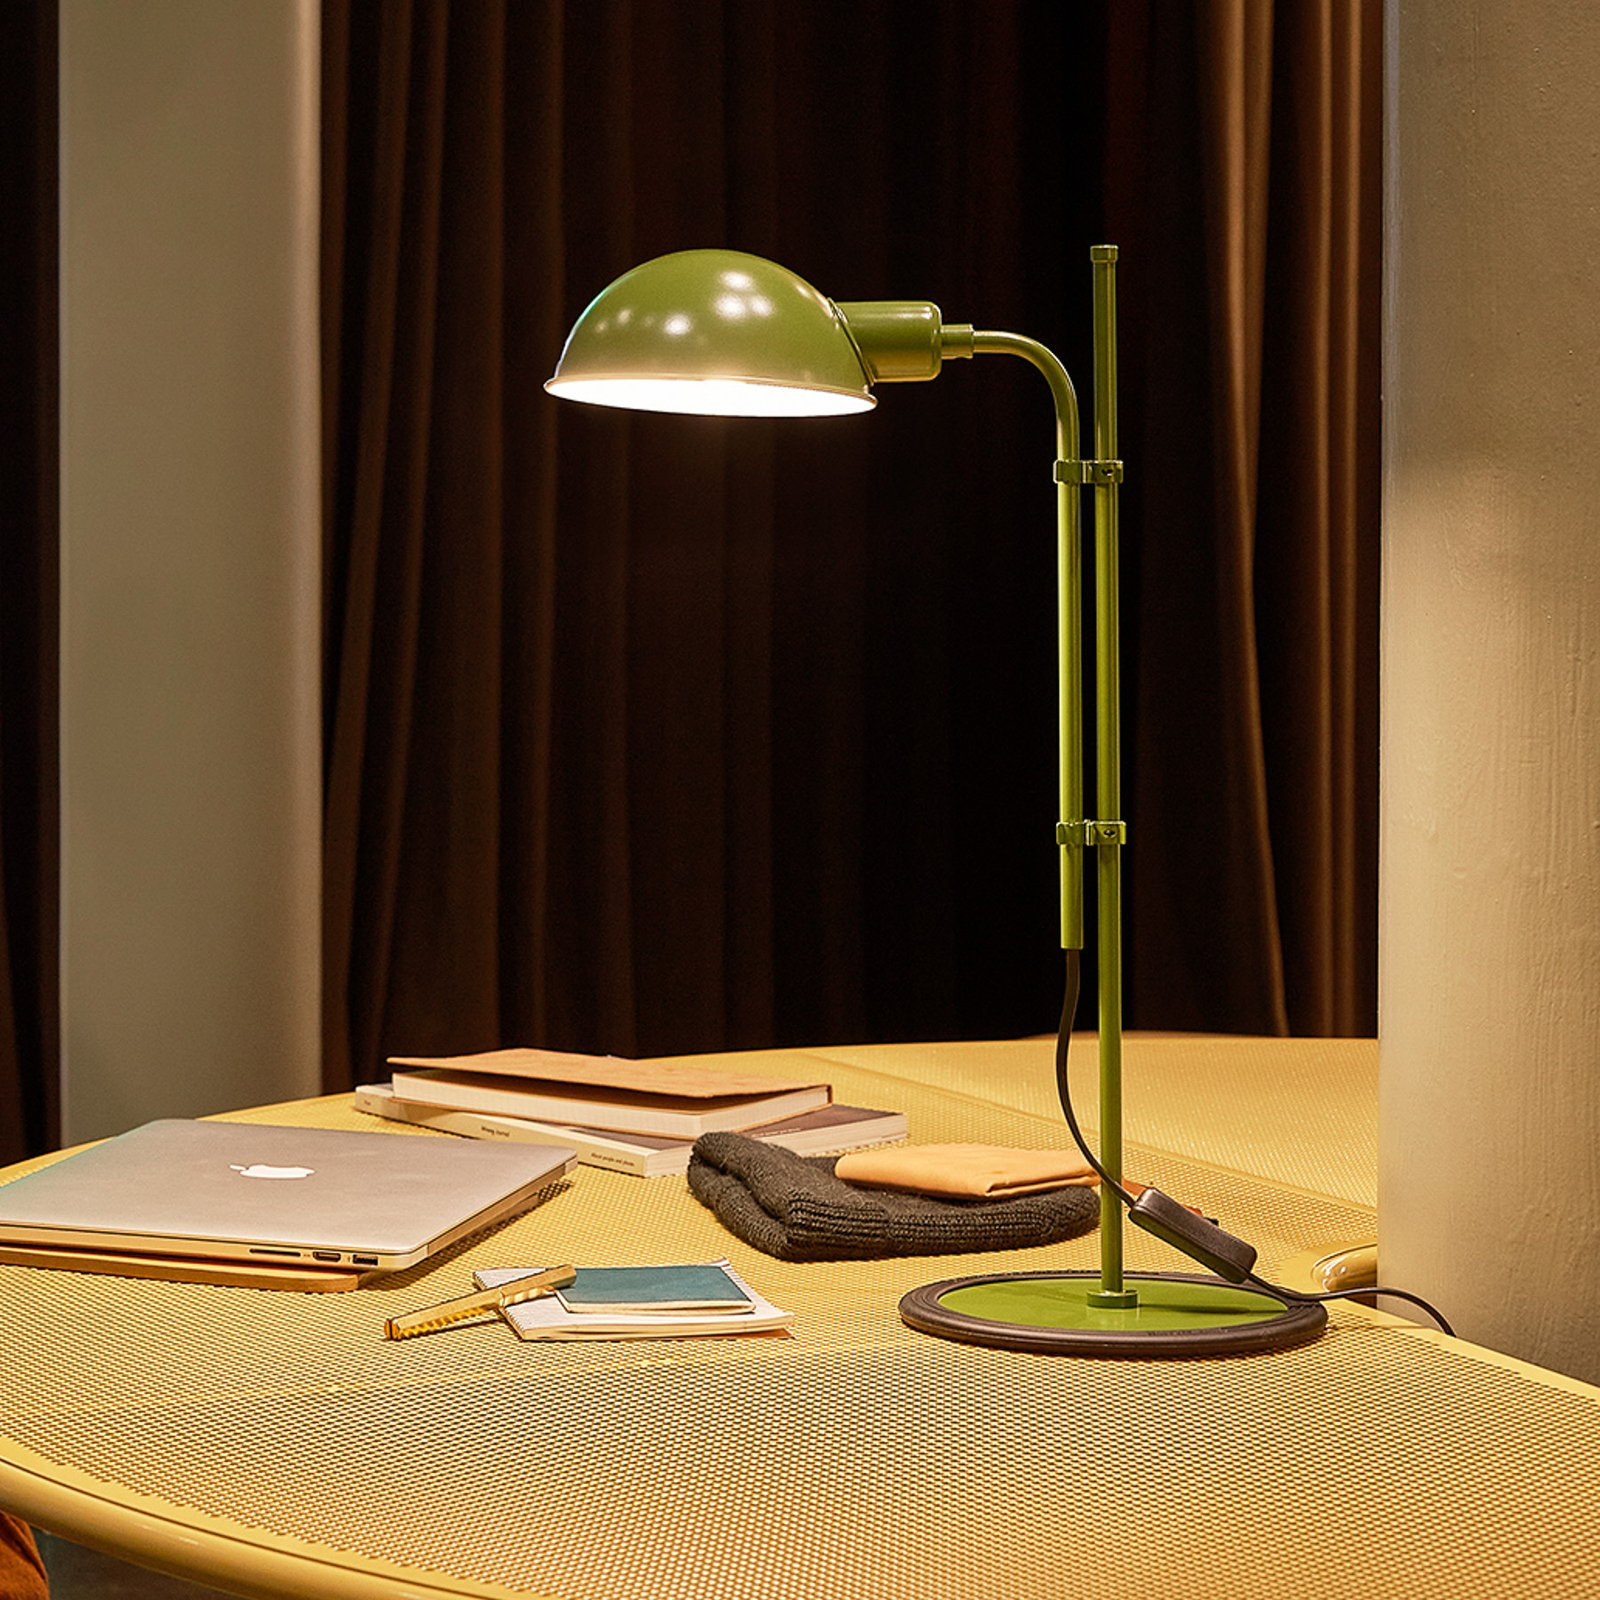 MARSET Funiculí lámpara de mesa, verde